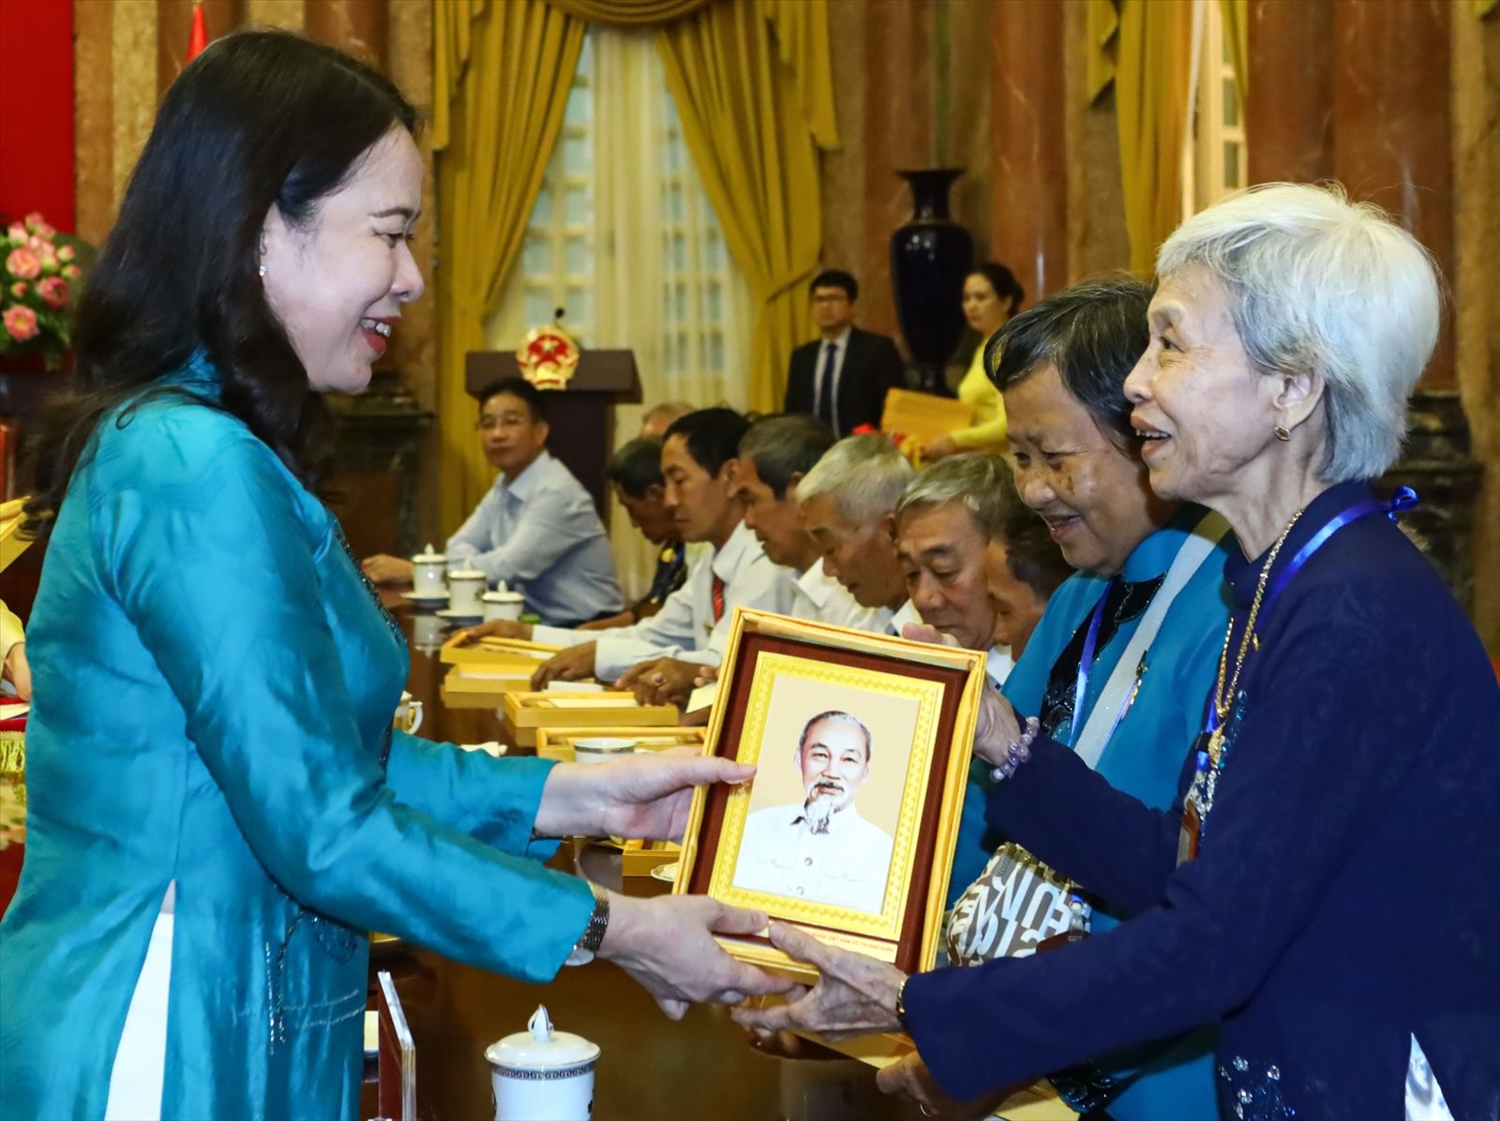 Phó Chủ tịch nước Võ Thị Ánh Xuân tặng chân dung Chủ tịch Hồ Chí Minh cho các đại biểu. Ảnh: VPCTN